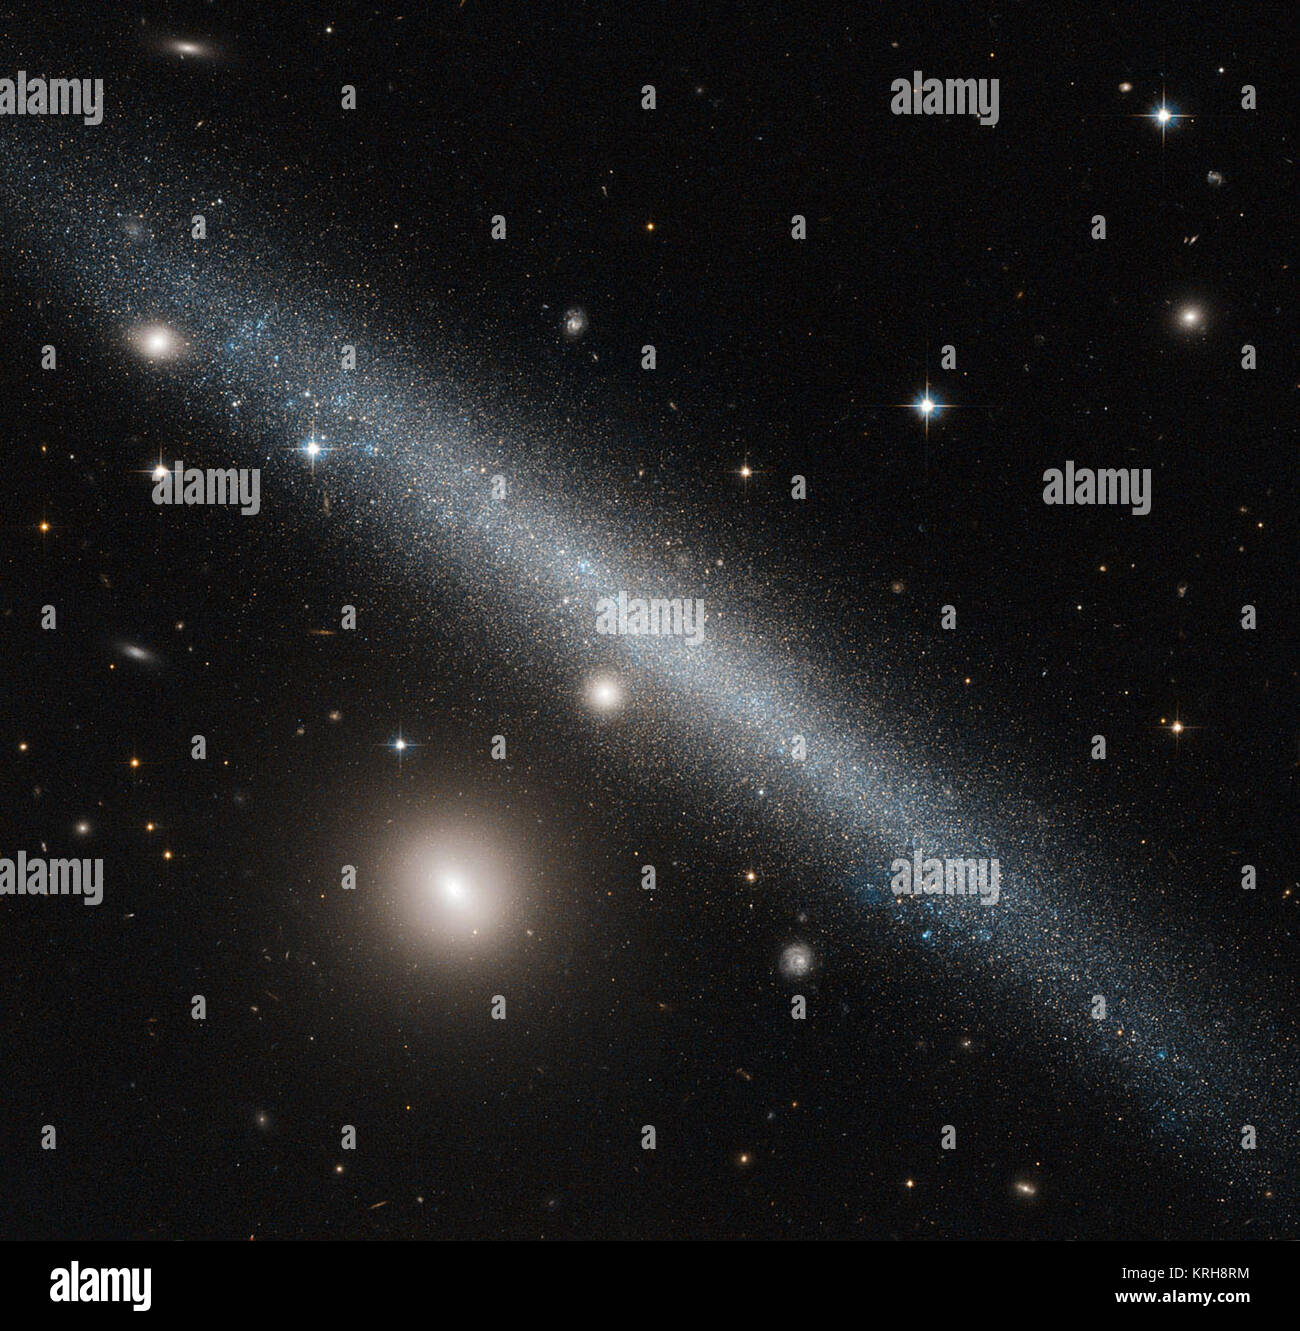 La galaxie radicalement de coupe sur l'image de cette NASA/ESA Hubble Space Telescope est une image légèrement tordu galaxie naine connue sous le nom de UGC 1281. Vu ici à partir d'un point de vue de côté, cette galaxie se trouve à environ 18 millions d'années-lumière dans la constellation d'Triangulum (Le Triangle). Le compagnon lumineux à l'angle inférieur gauche d'UGC 1281 est la petite galaxie PGC 6700, officiellement connu sous le nom 2MASX J01493473 +3234464. D'autres éminents étoiles appartenant à notre propre galaxie, la Voie lactée, et plus lointaines galaxies peuvent être vus éparpillés dans le ciel. Sur le côté nous avons vue d'UGC 1281 fait un p Banque D'Images